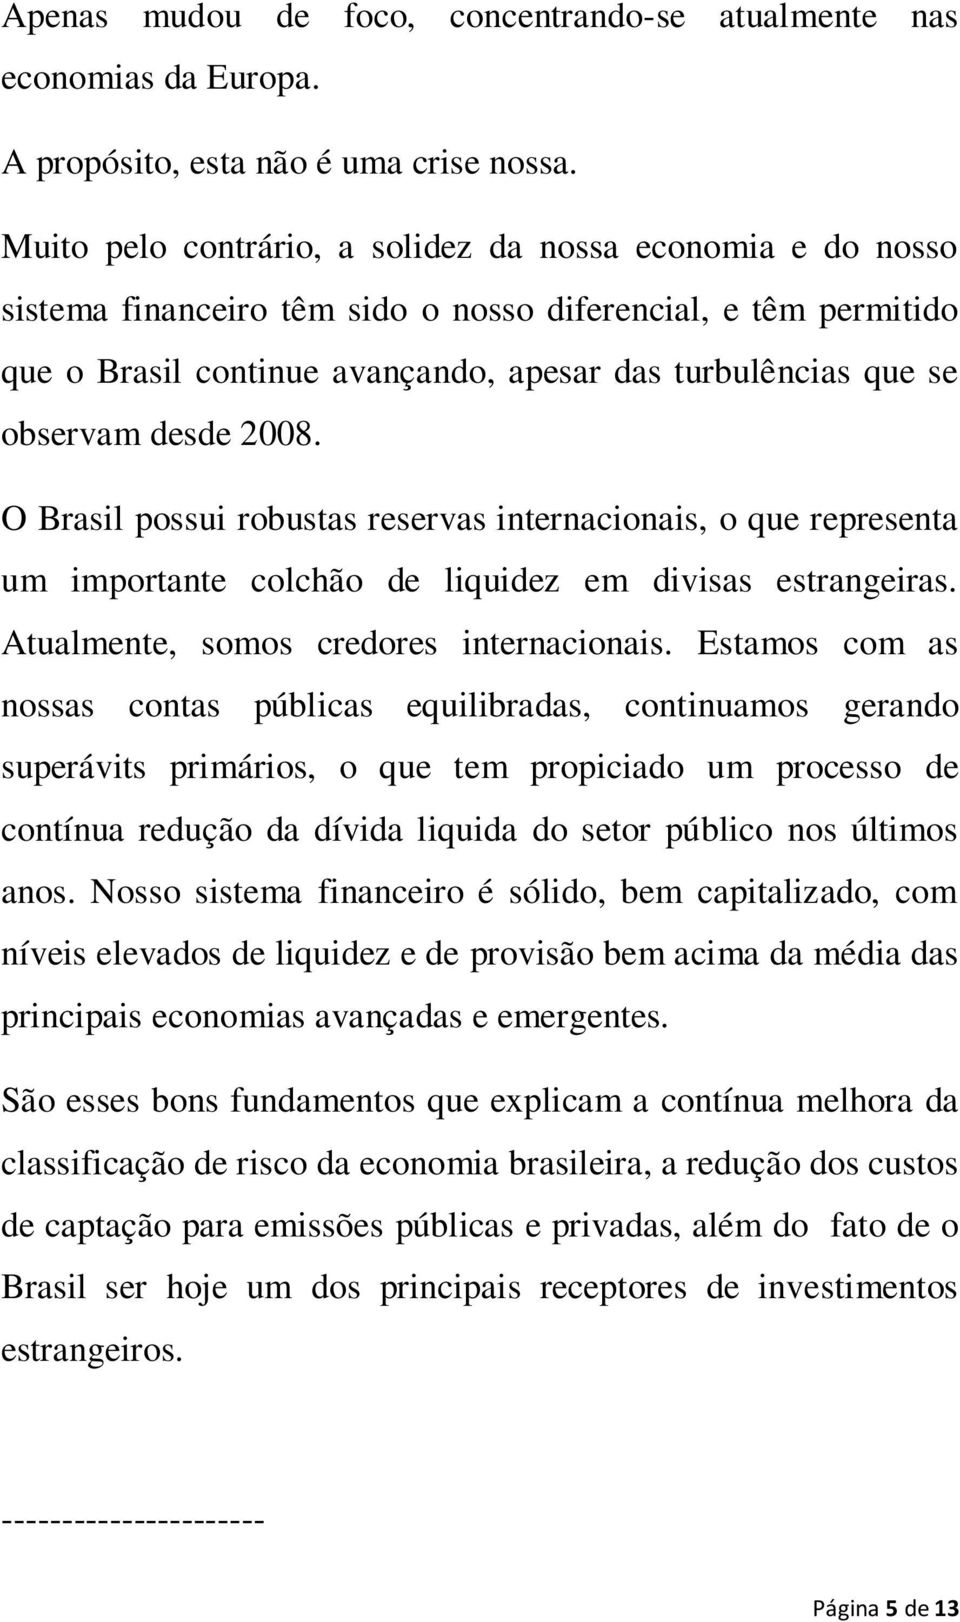 desde 2008. O Brasil possui robustas reservas internacionais, o que representa um importante colchão de liquidez em divisas estrangeiras. Atualmente, somos credores internacionais.